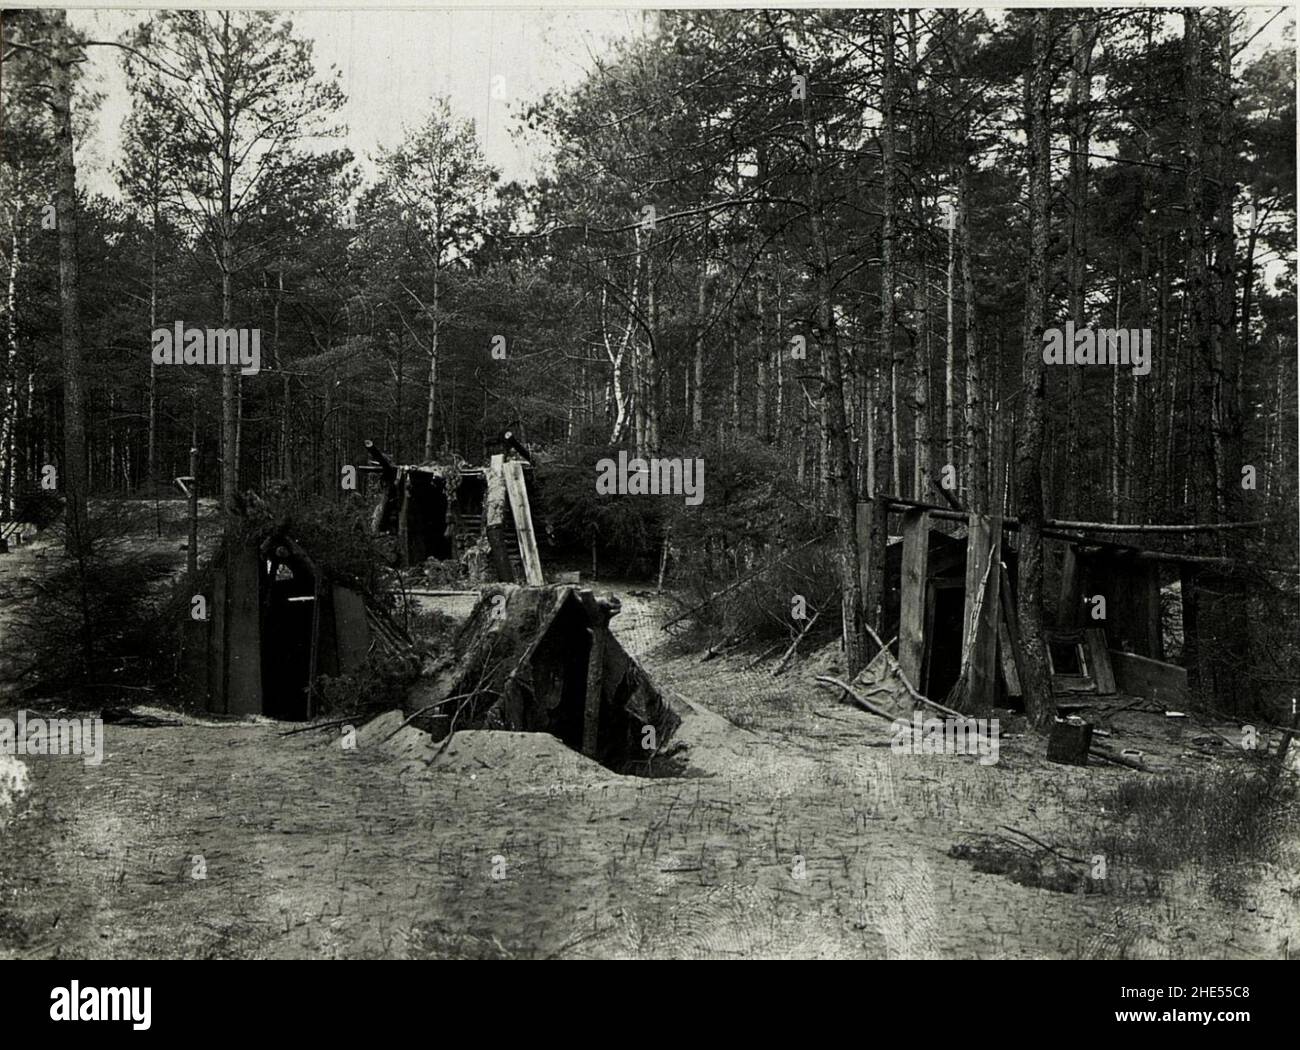 Russische Ruhestellung im Wald bei Falkòwska - Wòlka. Stock Photo